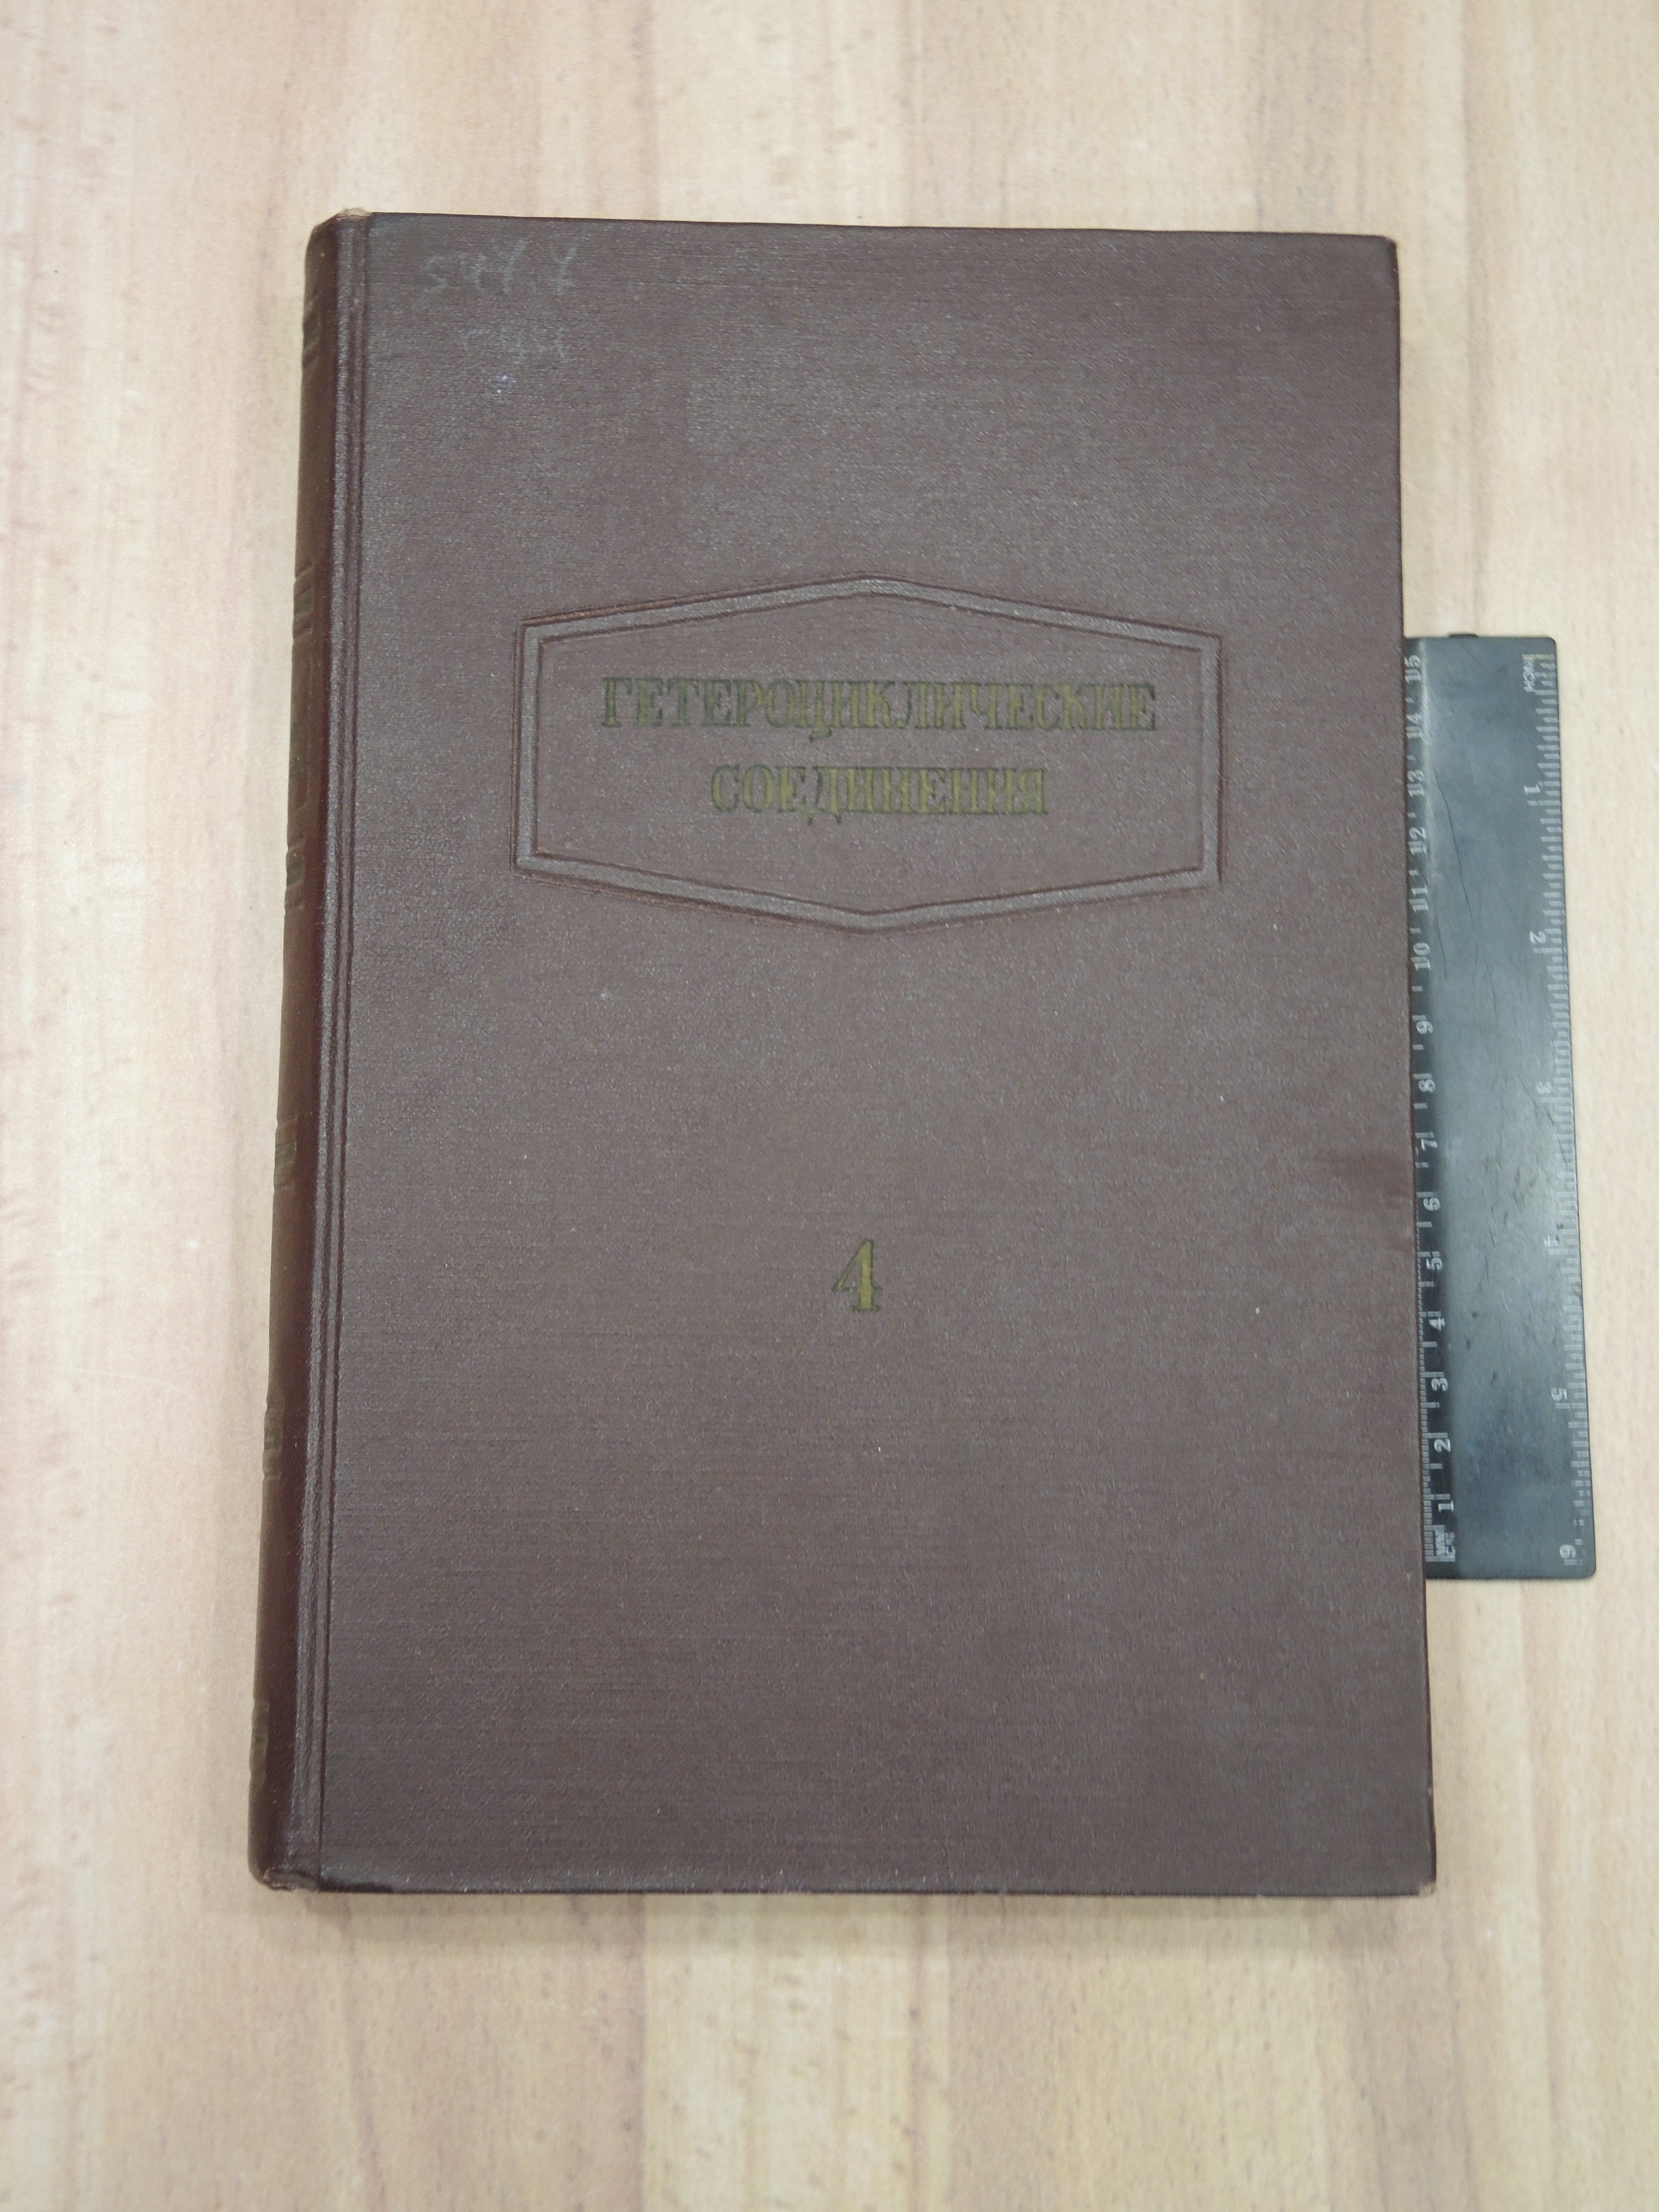 книга Эльдерфилд гетероциклические соединения органическая химия хинолин бензопиридин СССР 1955 г